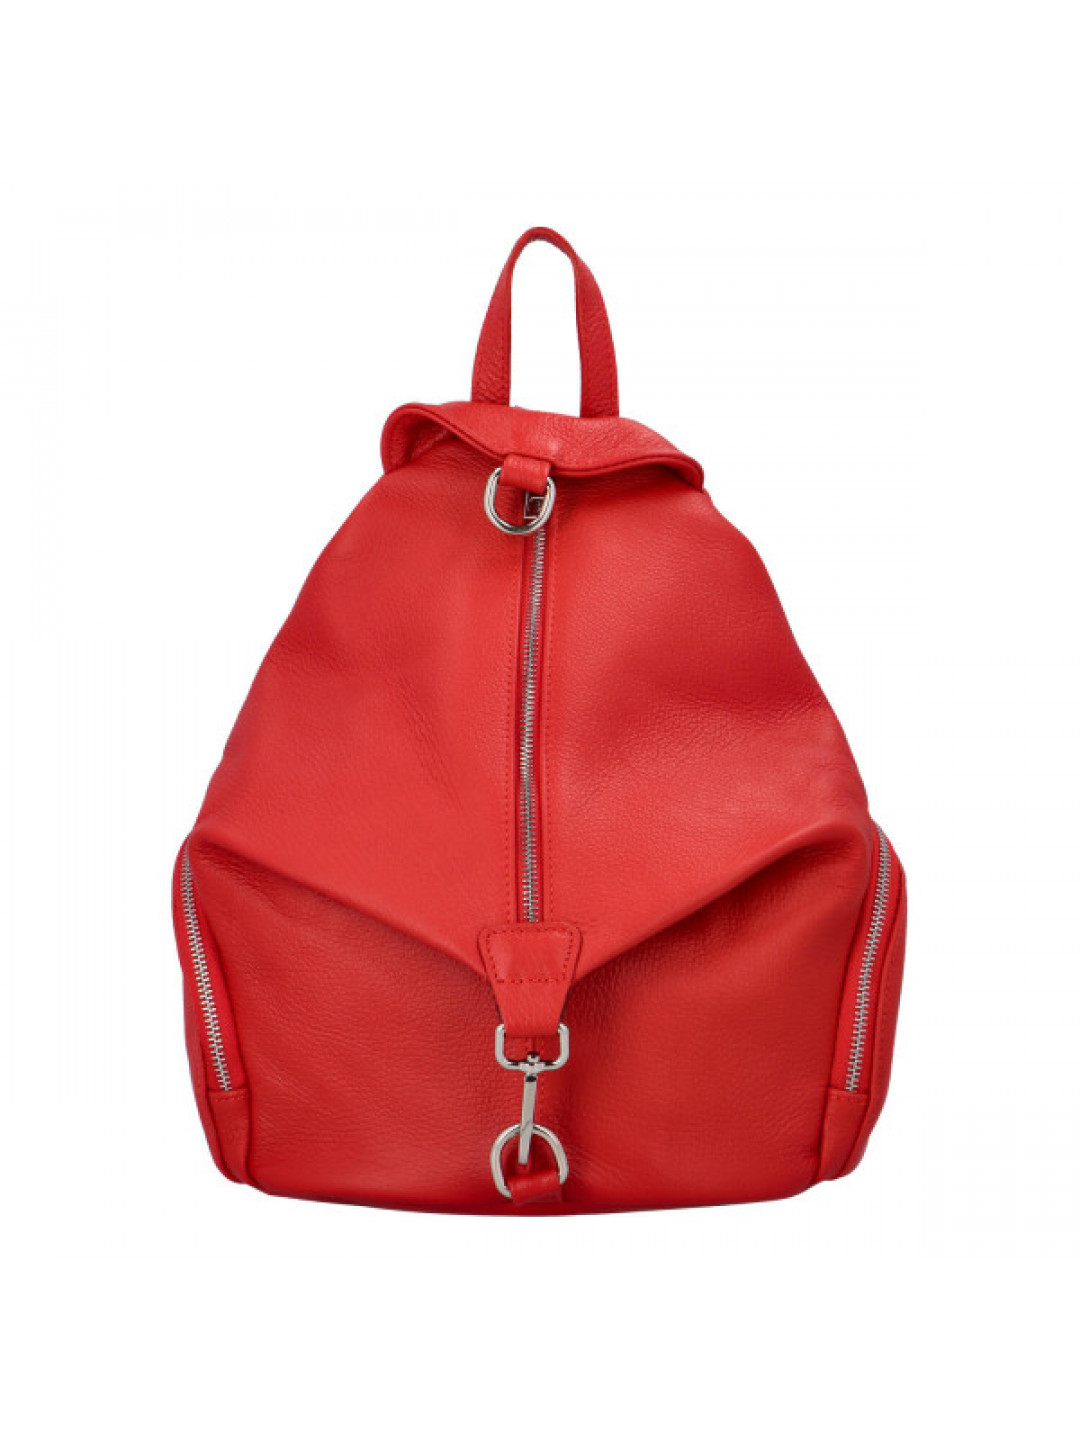 Dámský kožený batoh červený – ItalY Marnos